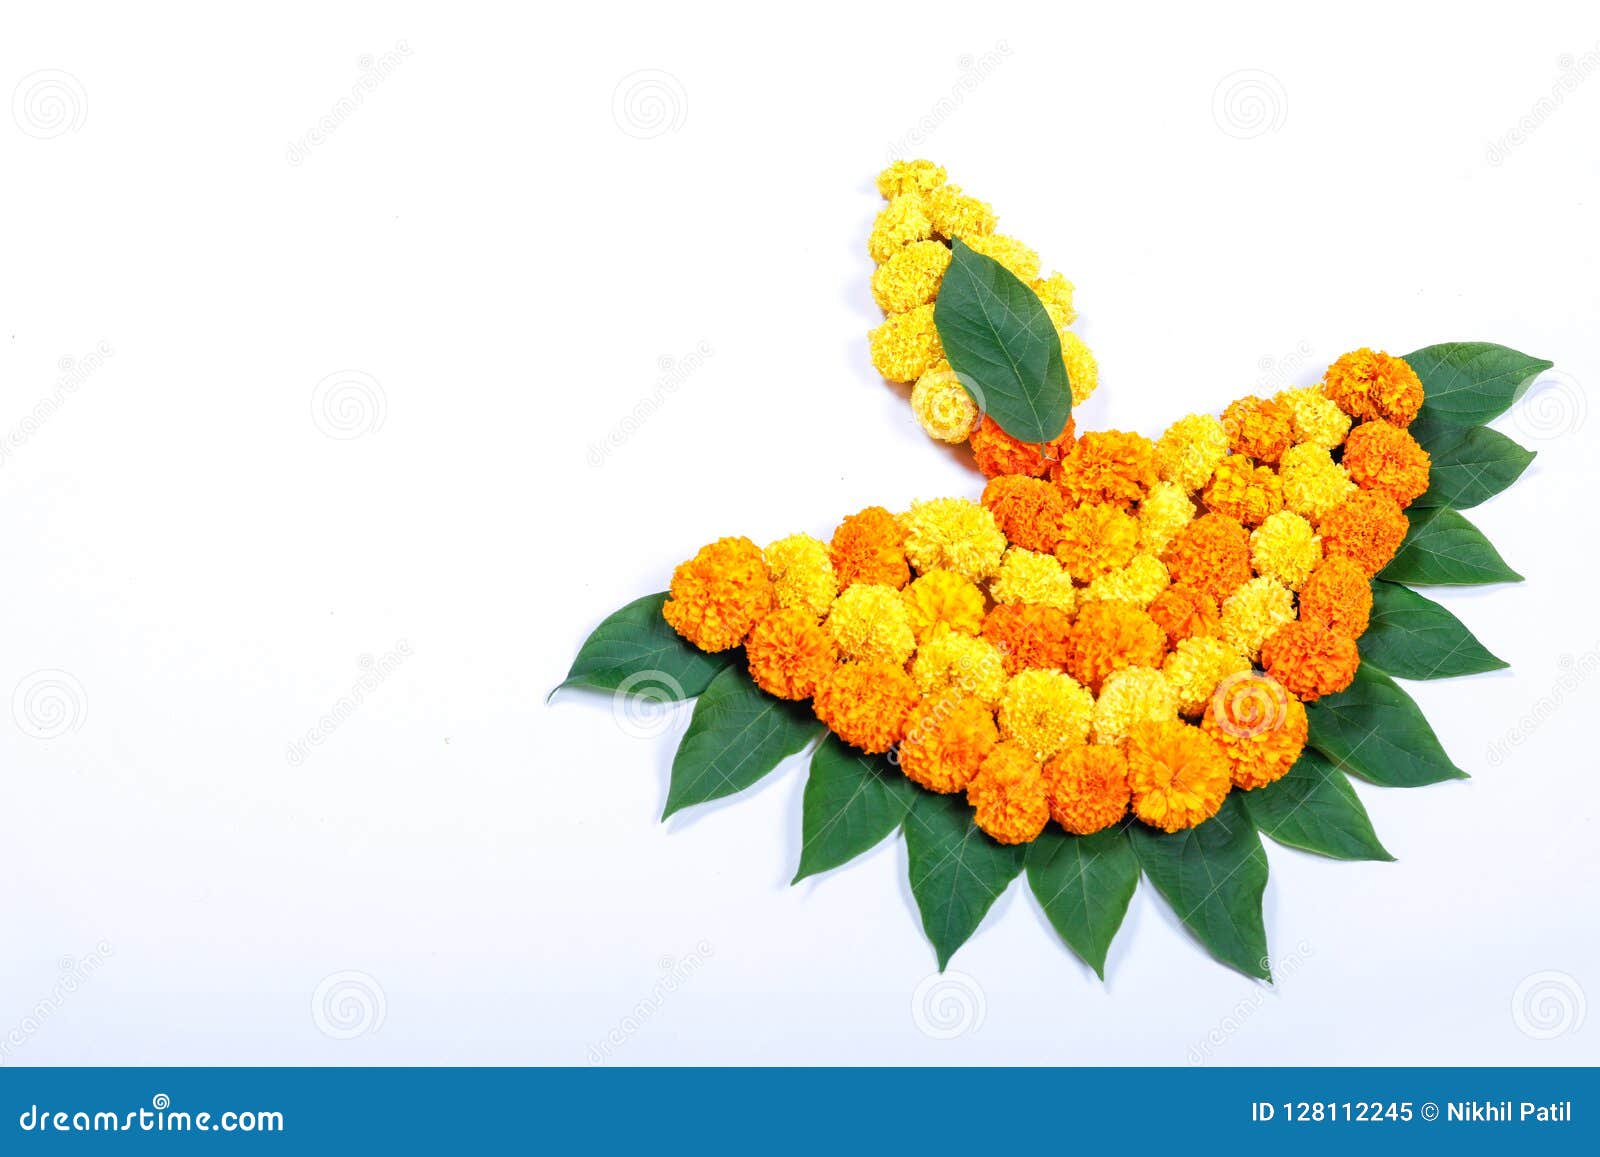 Marigold Flower Rangoli Design for Diwali Festival , Indian ...